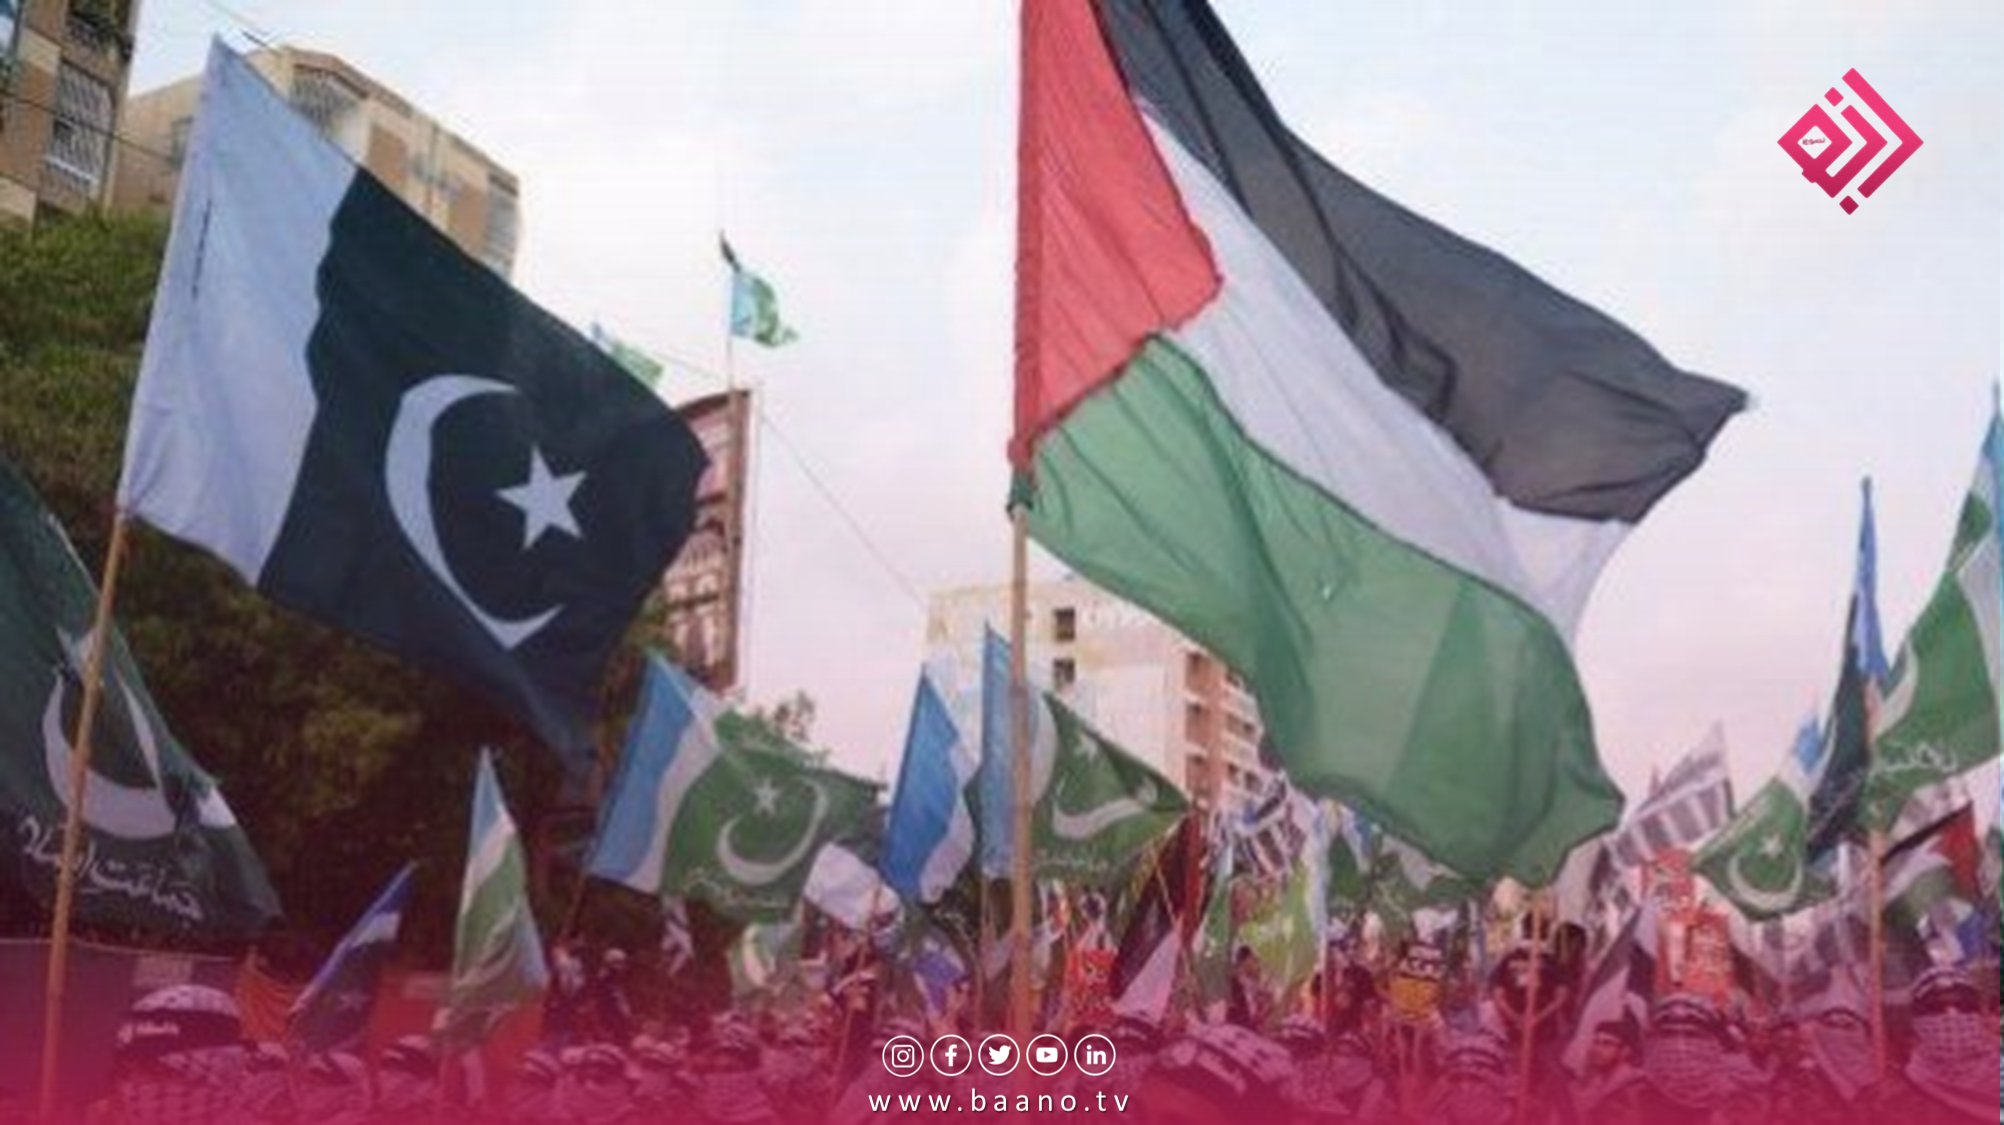 پاکستان جشن سال نو را برای ابراز همبستگی با فلسطینیان ممنوع کرد